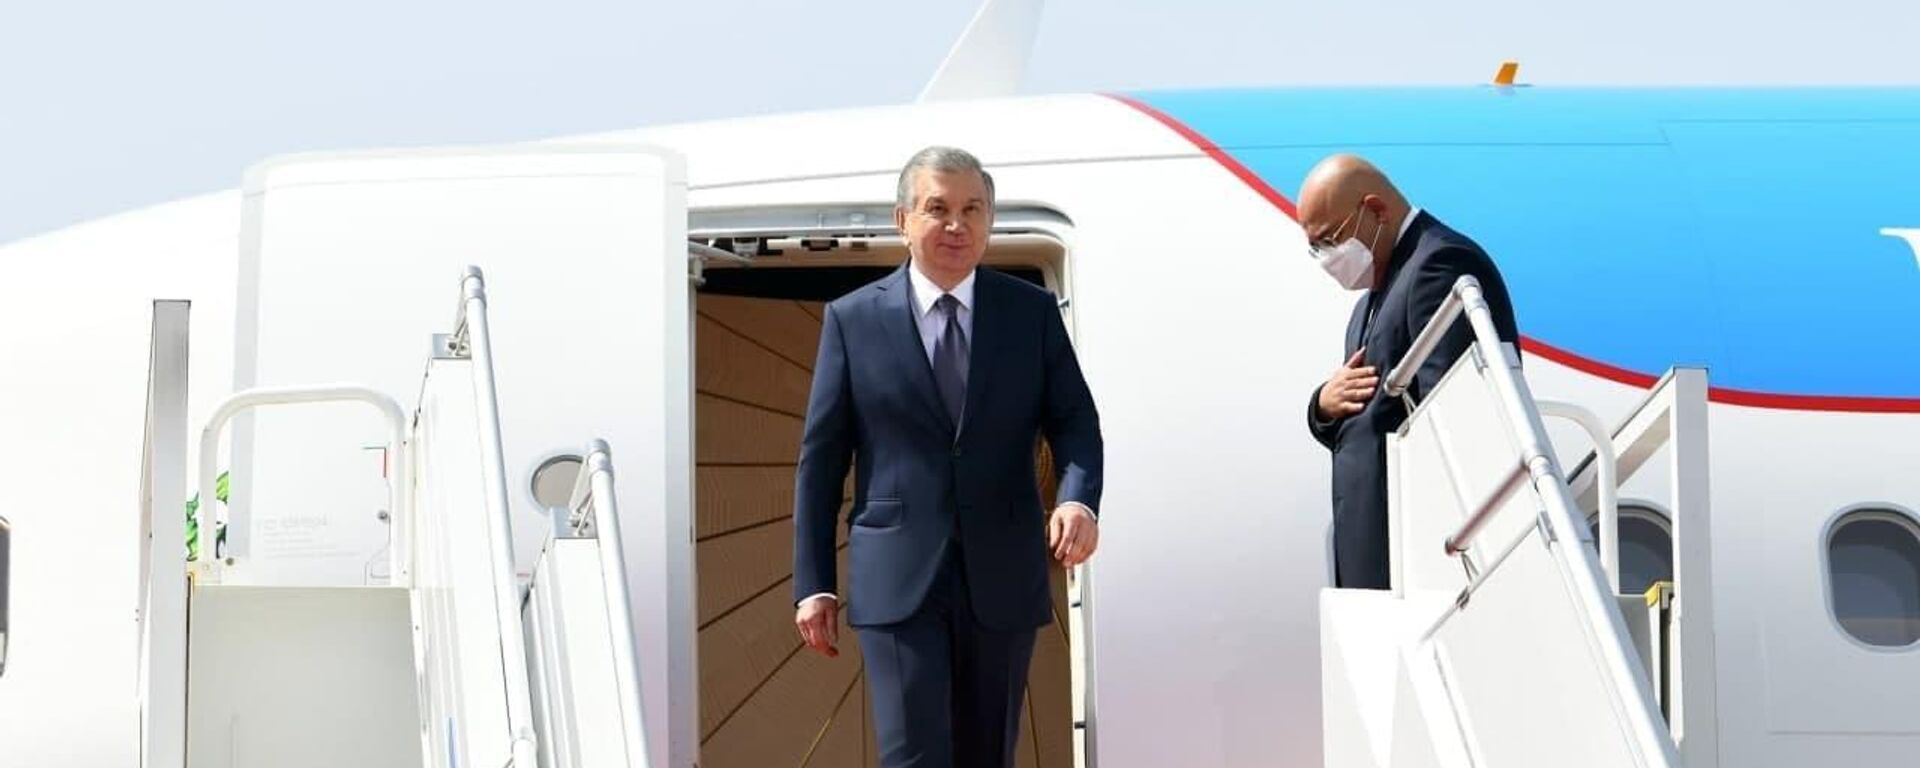 Президент Республики Узбекистан Шавкат Мирзиёев прибыл с официальным визитом в Республику Таджикистан - Sputnik Таджикистан, 1920, 10.06.2021